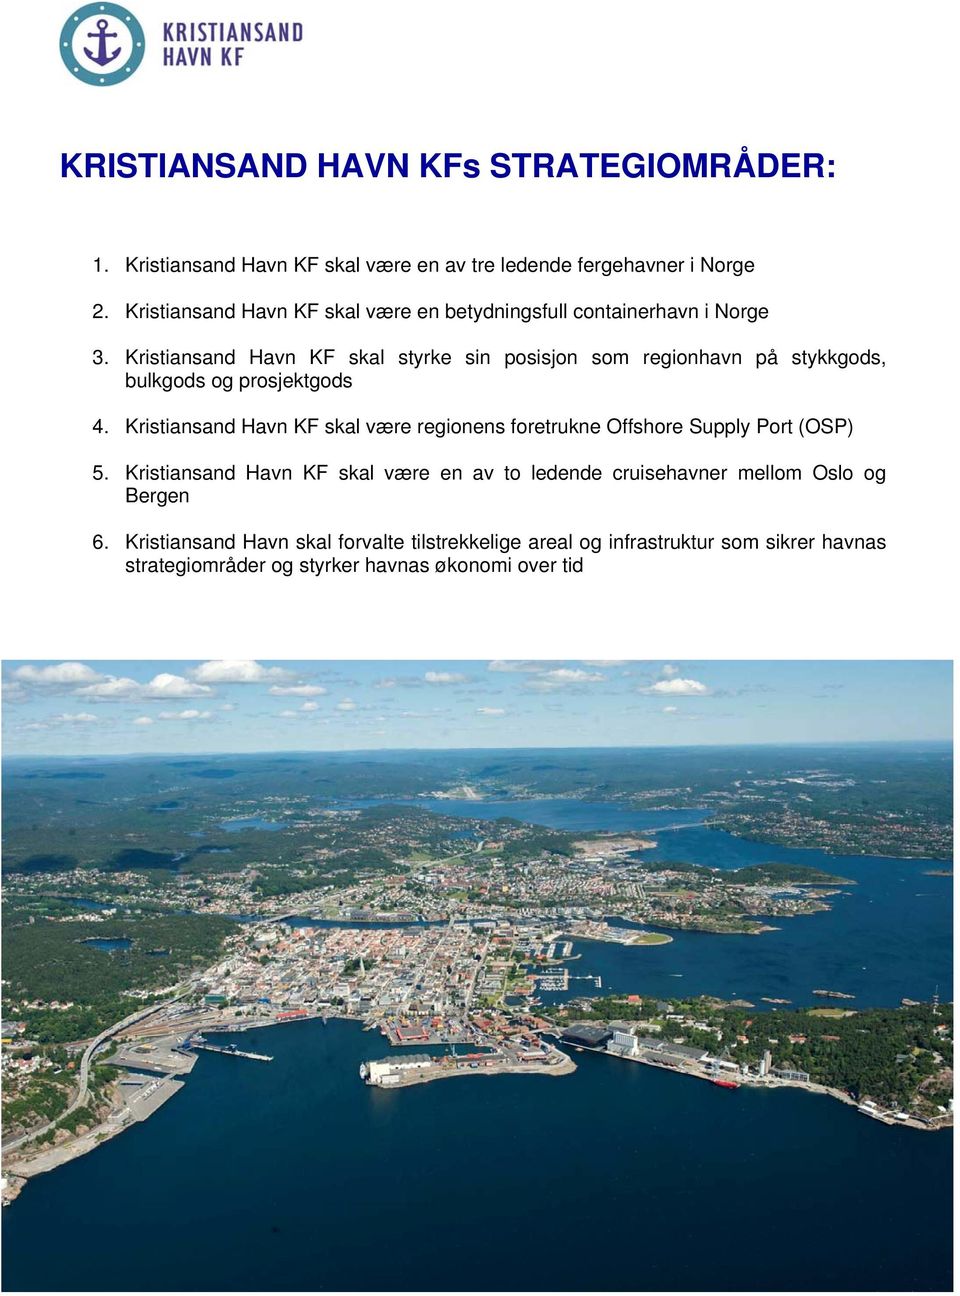 Kristiansand Havn KF skal styrke sin posisjon som regionhavn på stykkgods, bulkgods og prosjektgods 4.